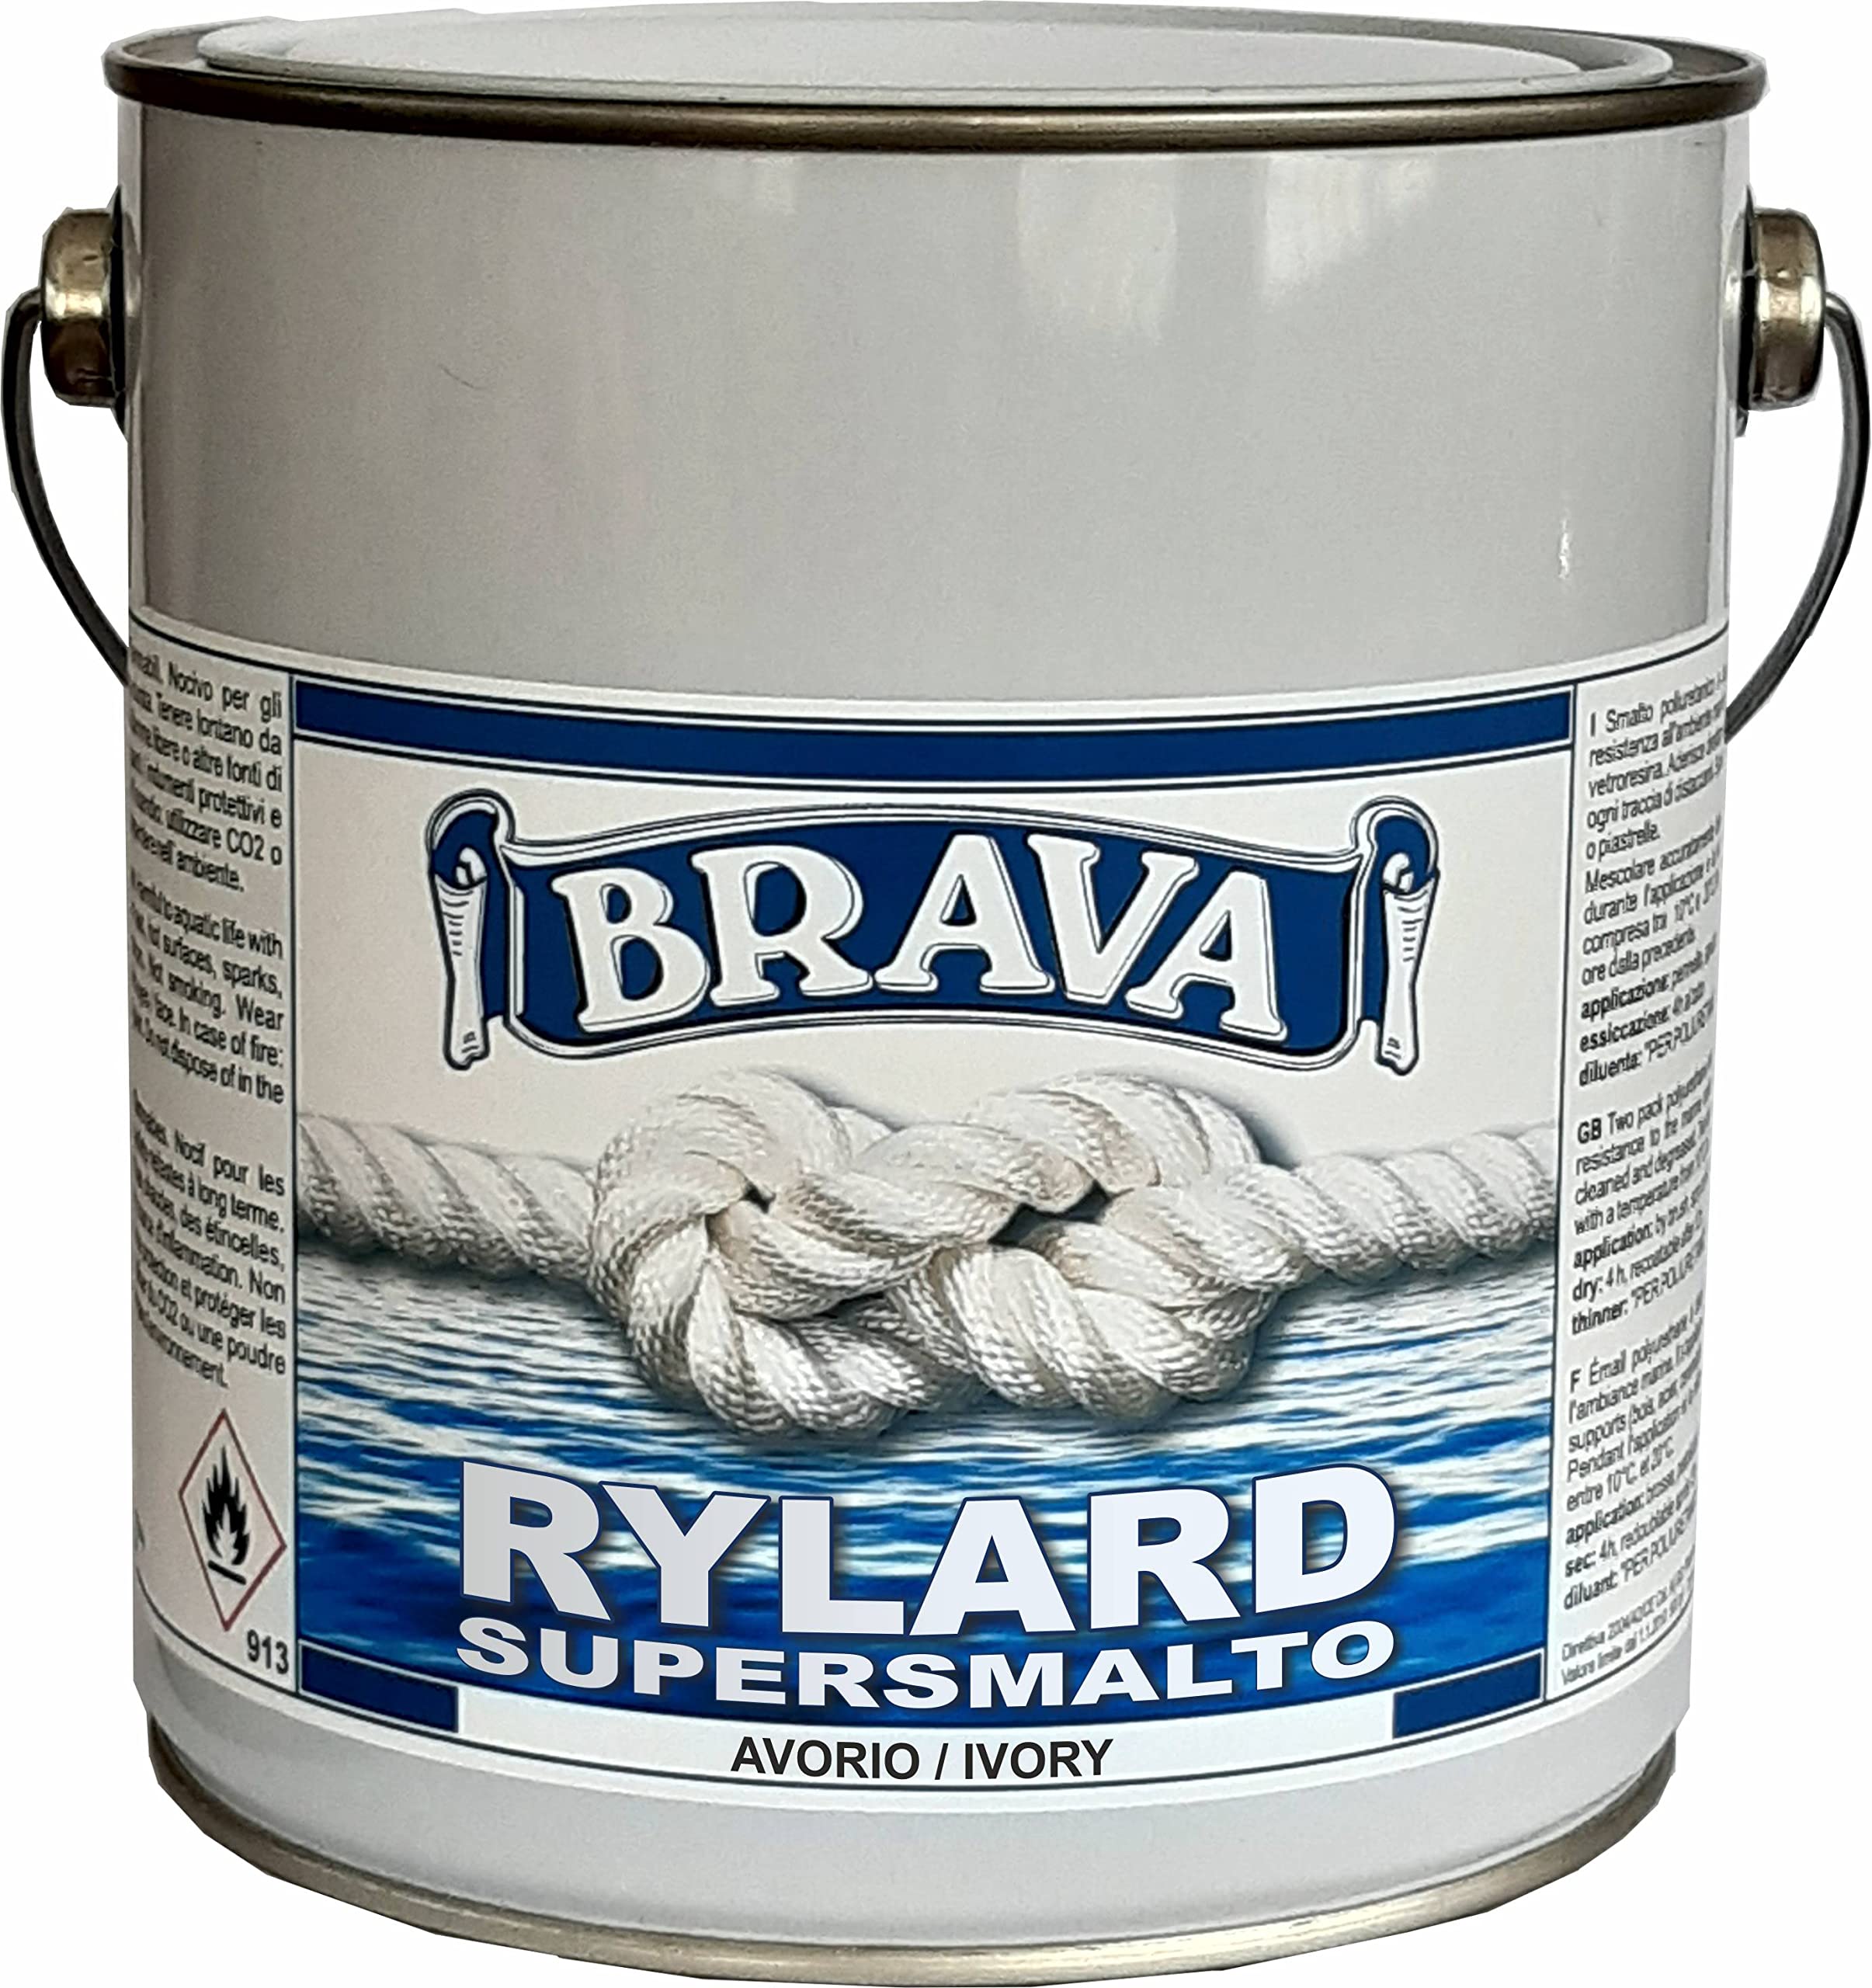 Brava Rylard supersmalto für Nautik, Elfenbein, 2500 ml